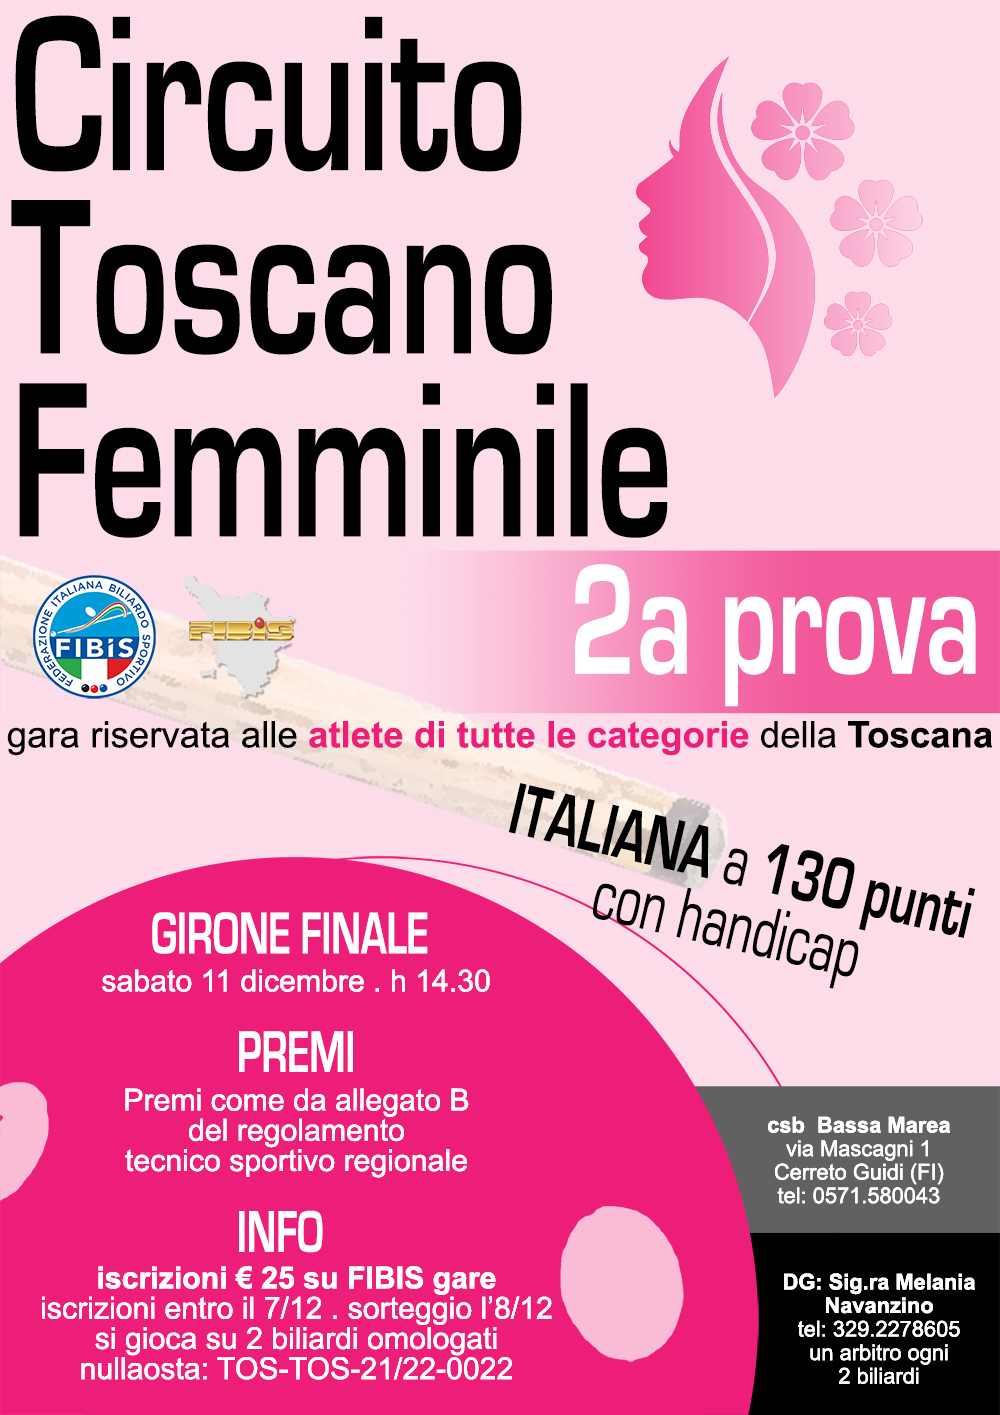 Circuito Toscano Femminile - 2° Prova